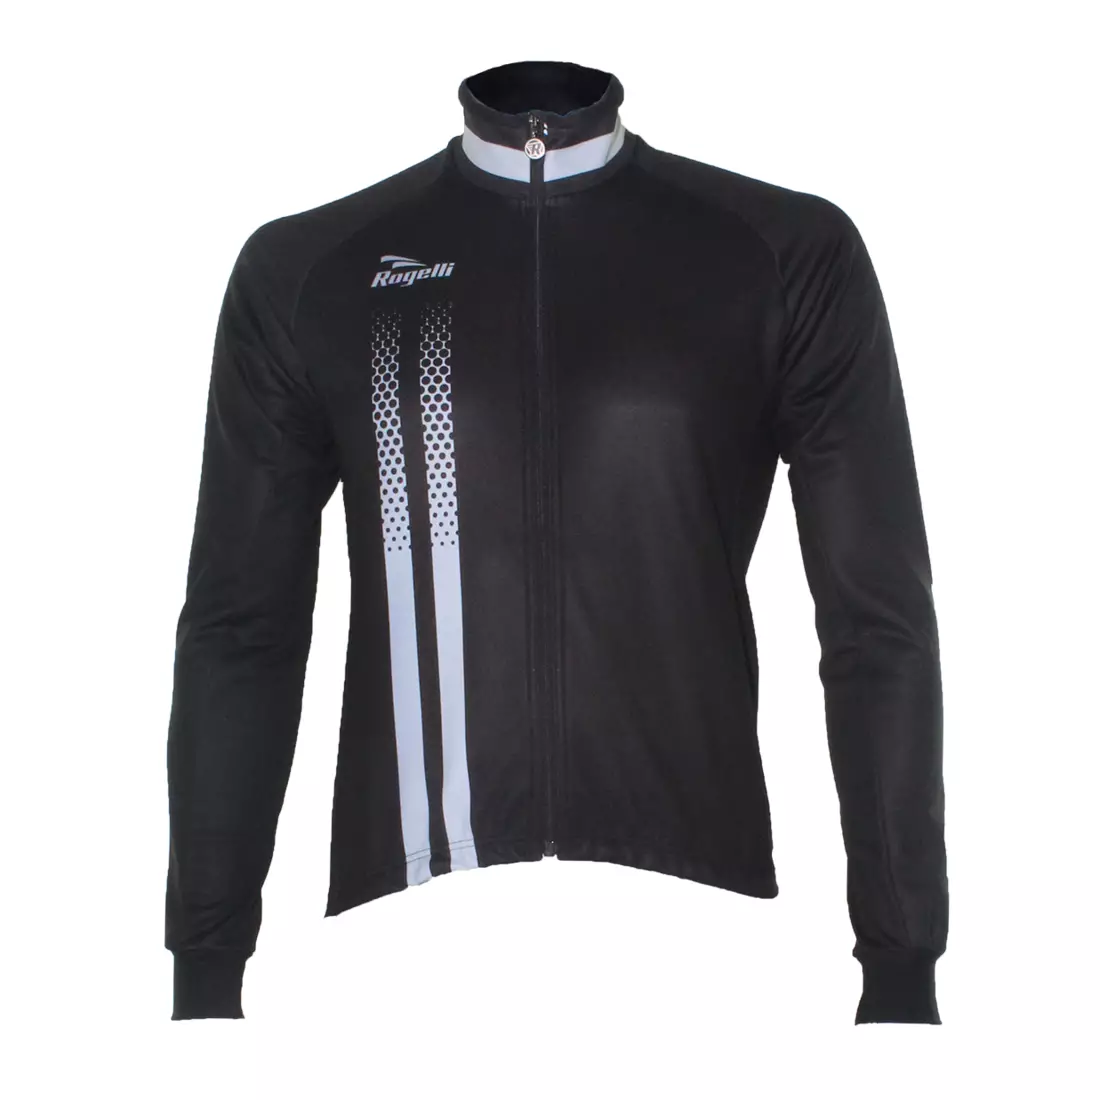 ROGELLI USCIO zimní cyklistická bunda WINDTEX černo-šedá